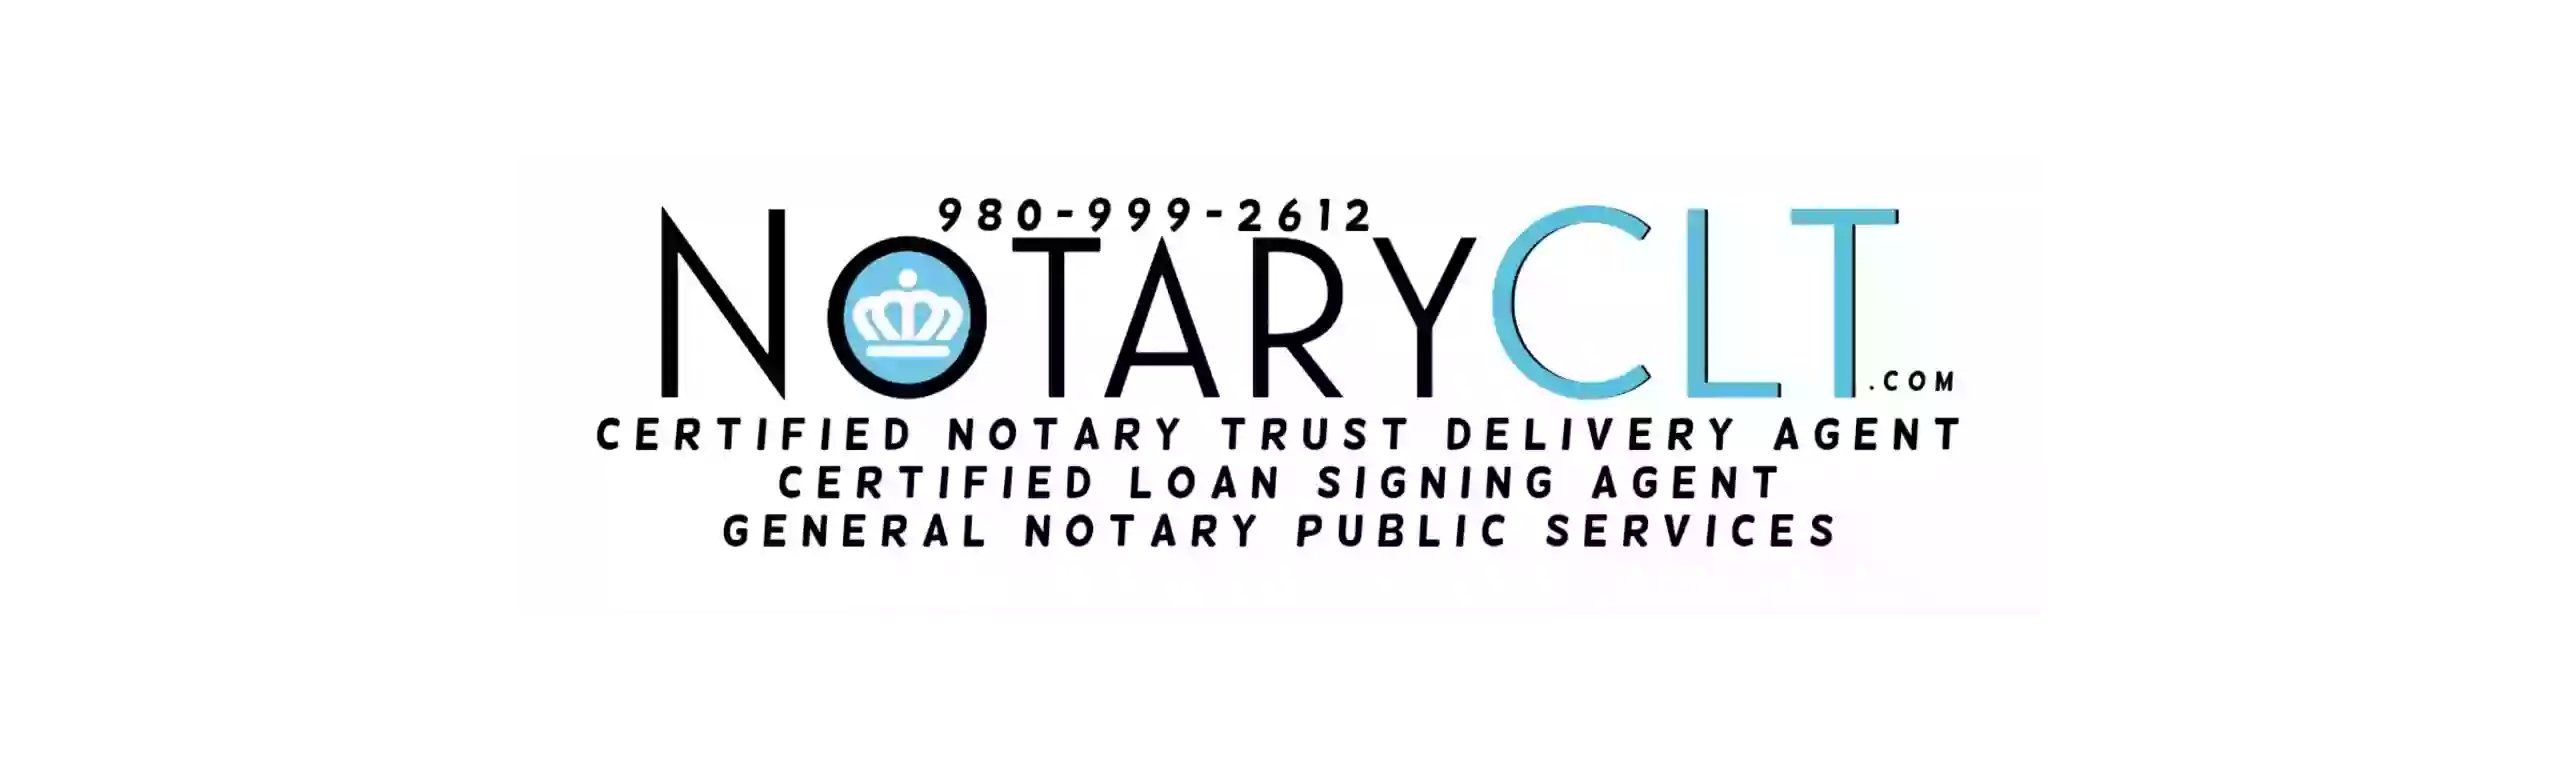 NotaryCLT LLC